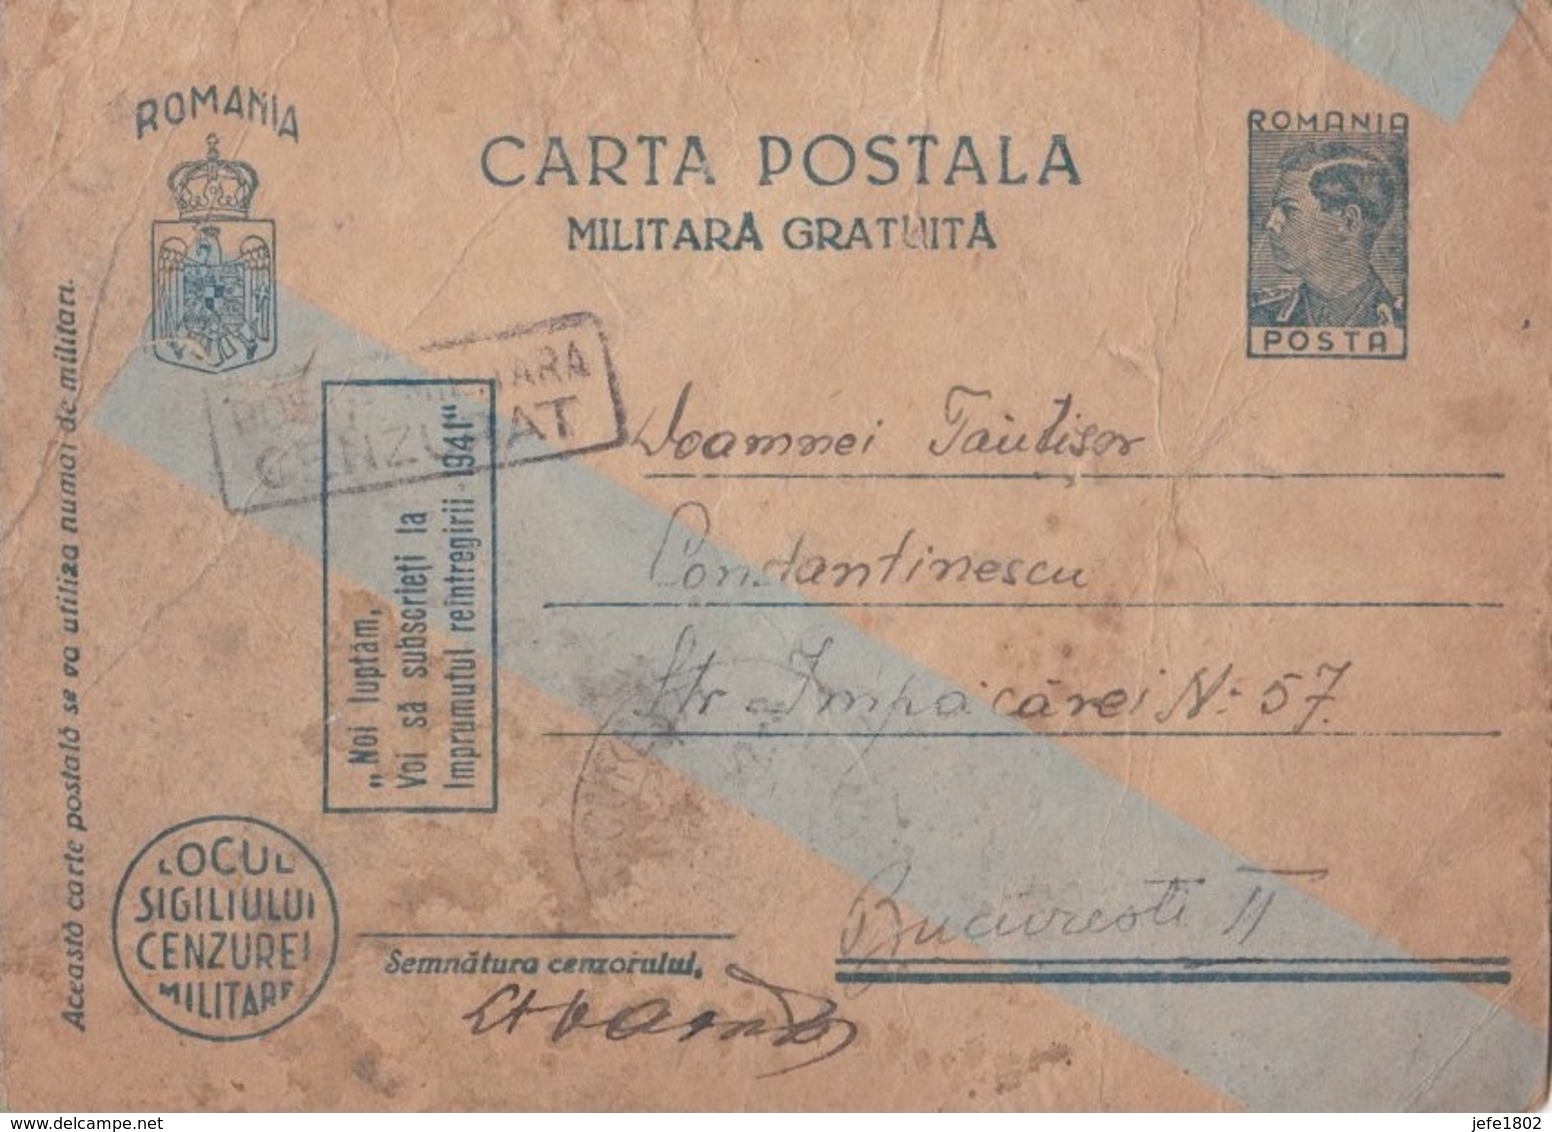 WO II - Carta Postala - Militara Gratuita - Franchise